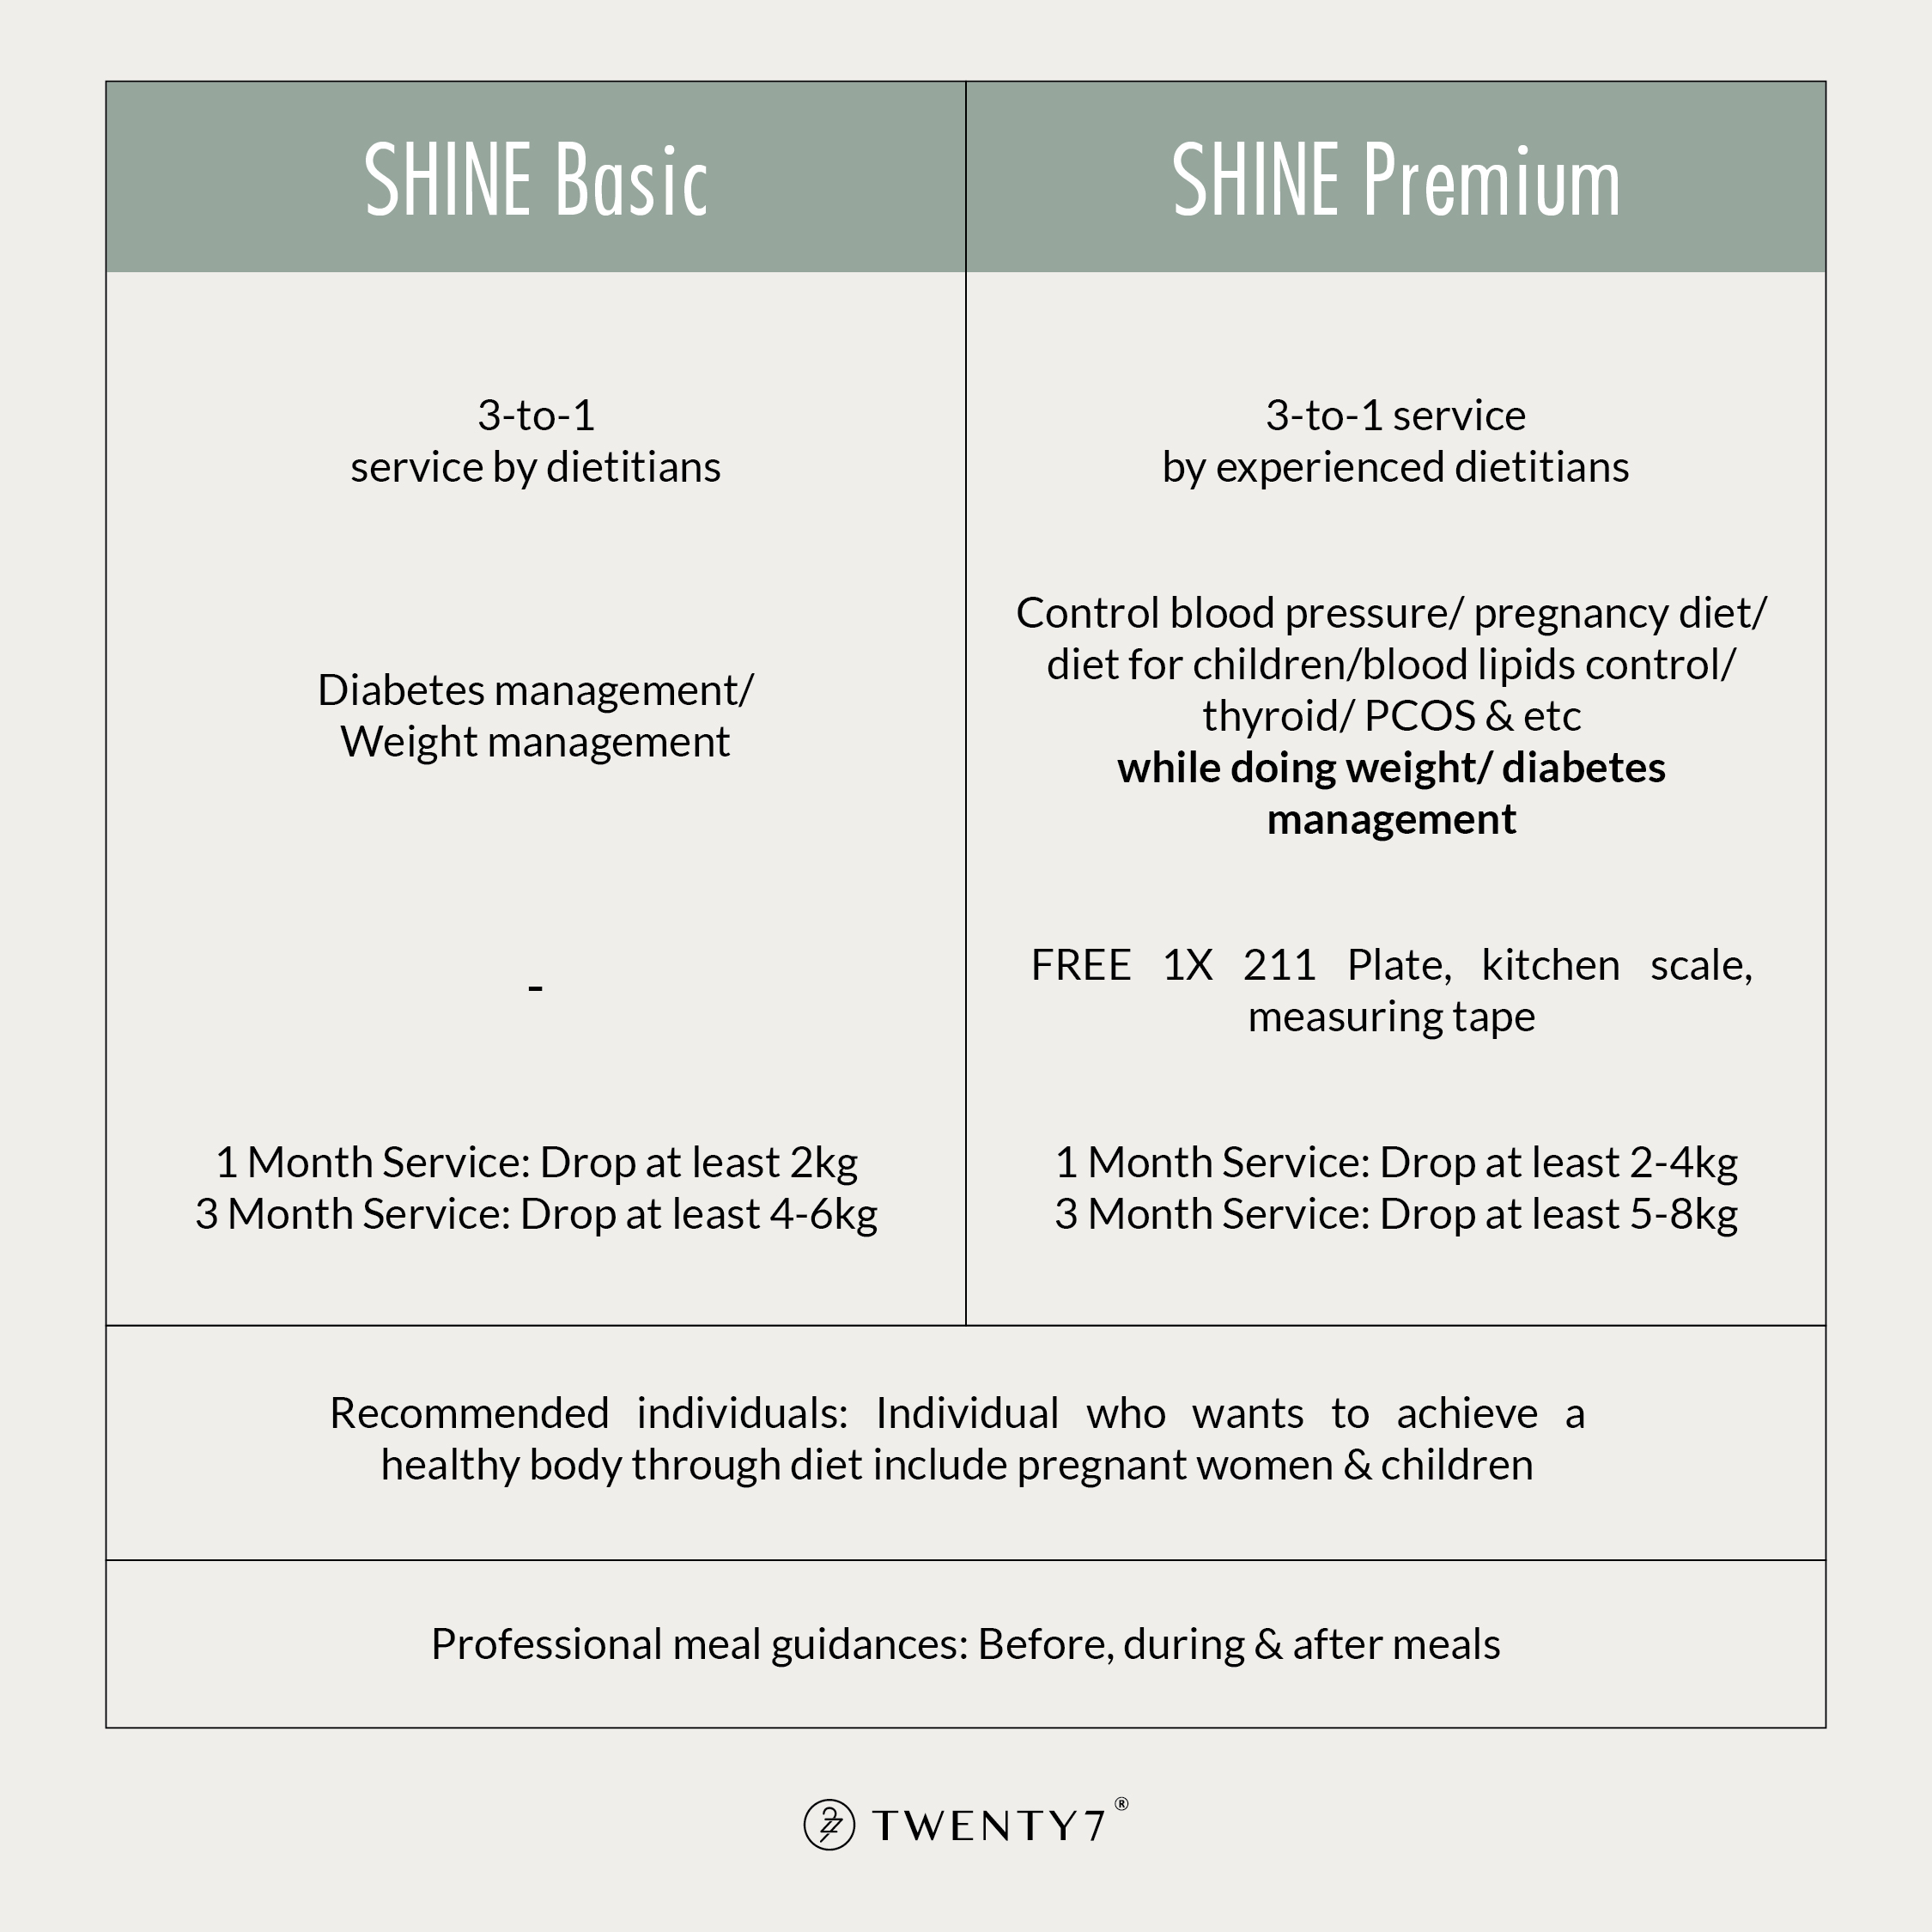 SHINE Premium